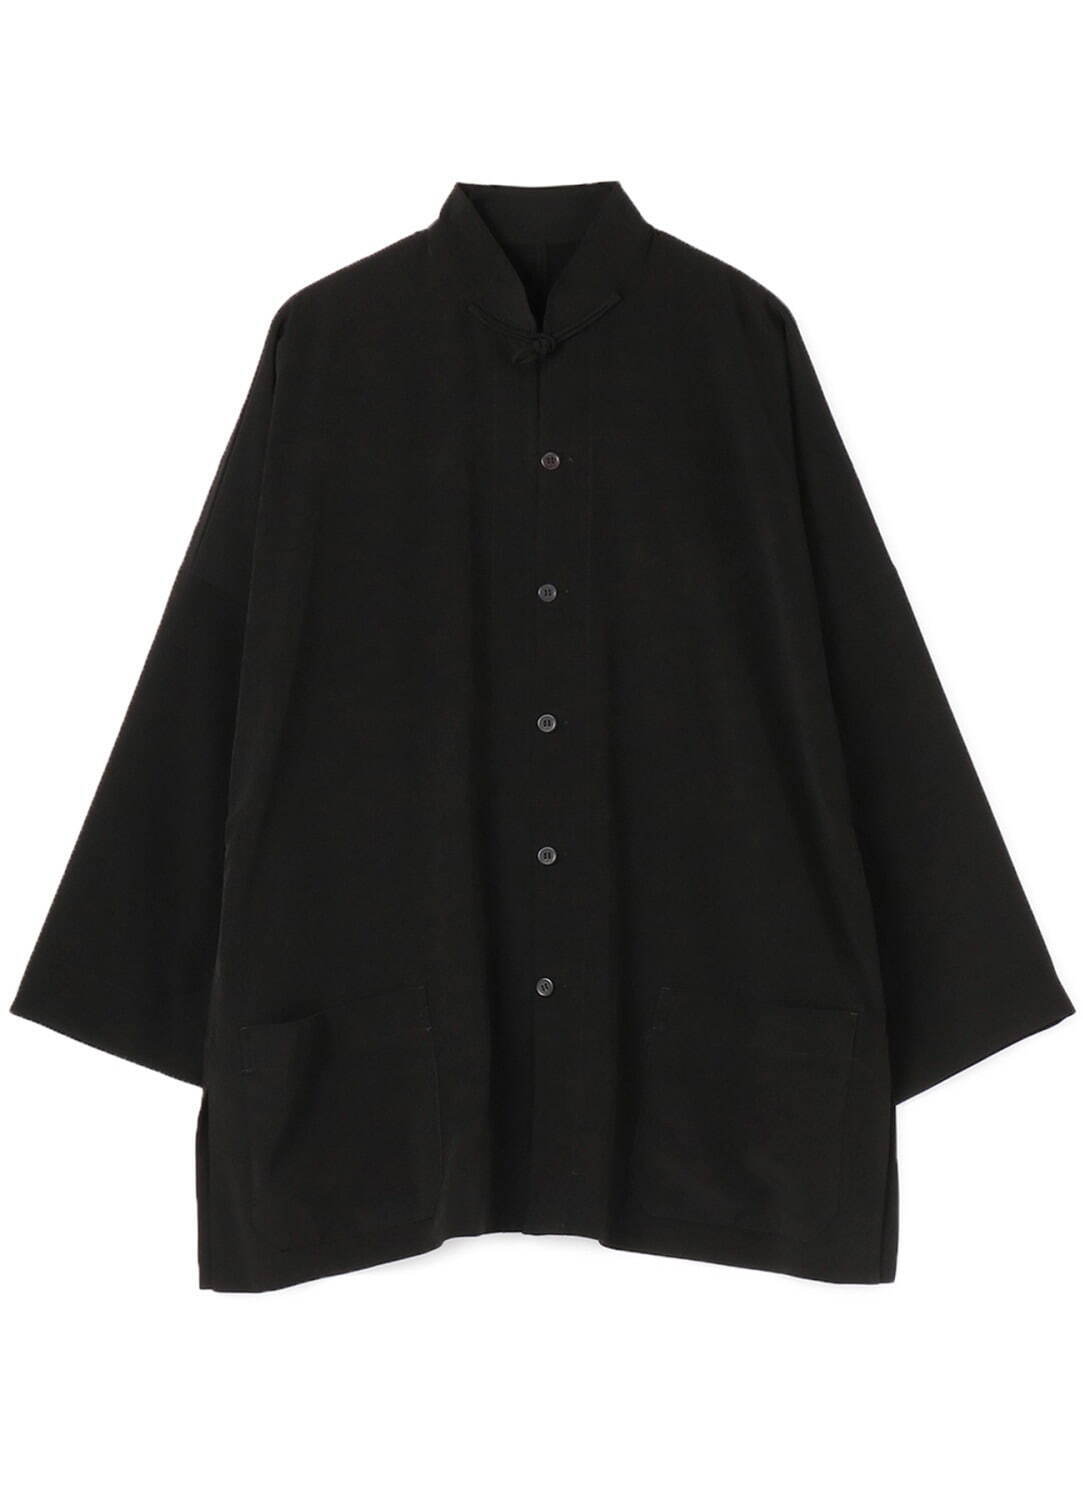 ワイズ バングオン！“黒”の新作チャイナシャツやジャケット、古い民族